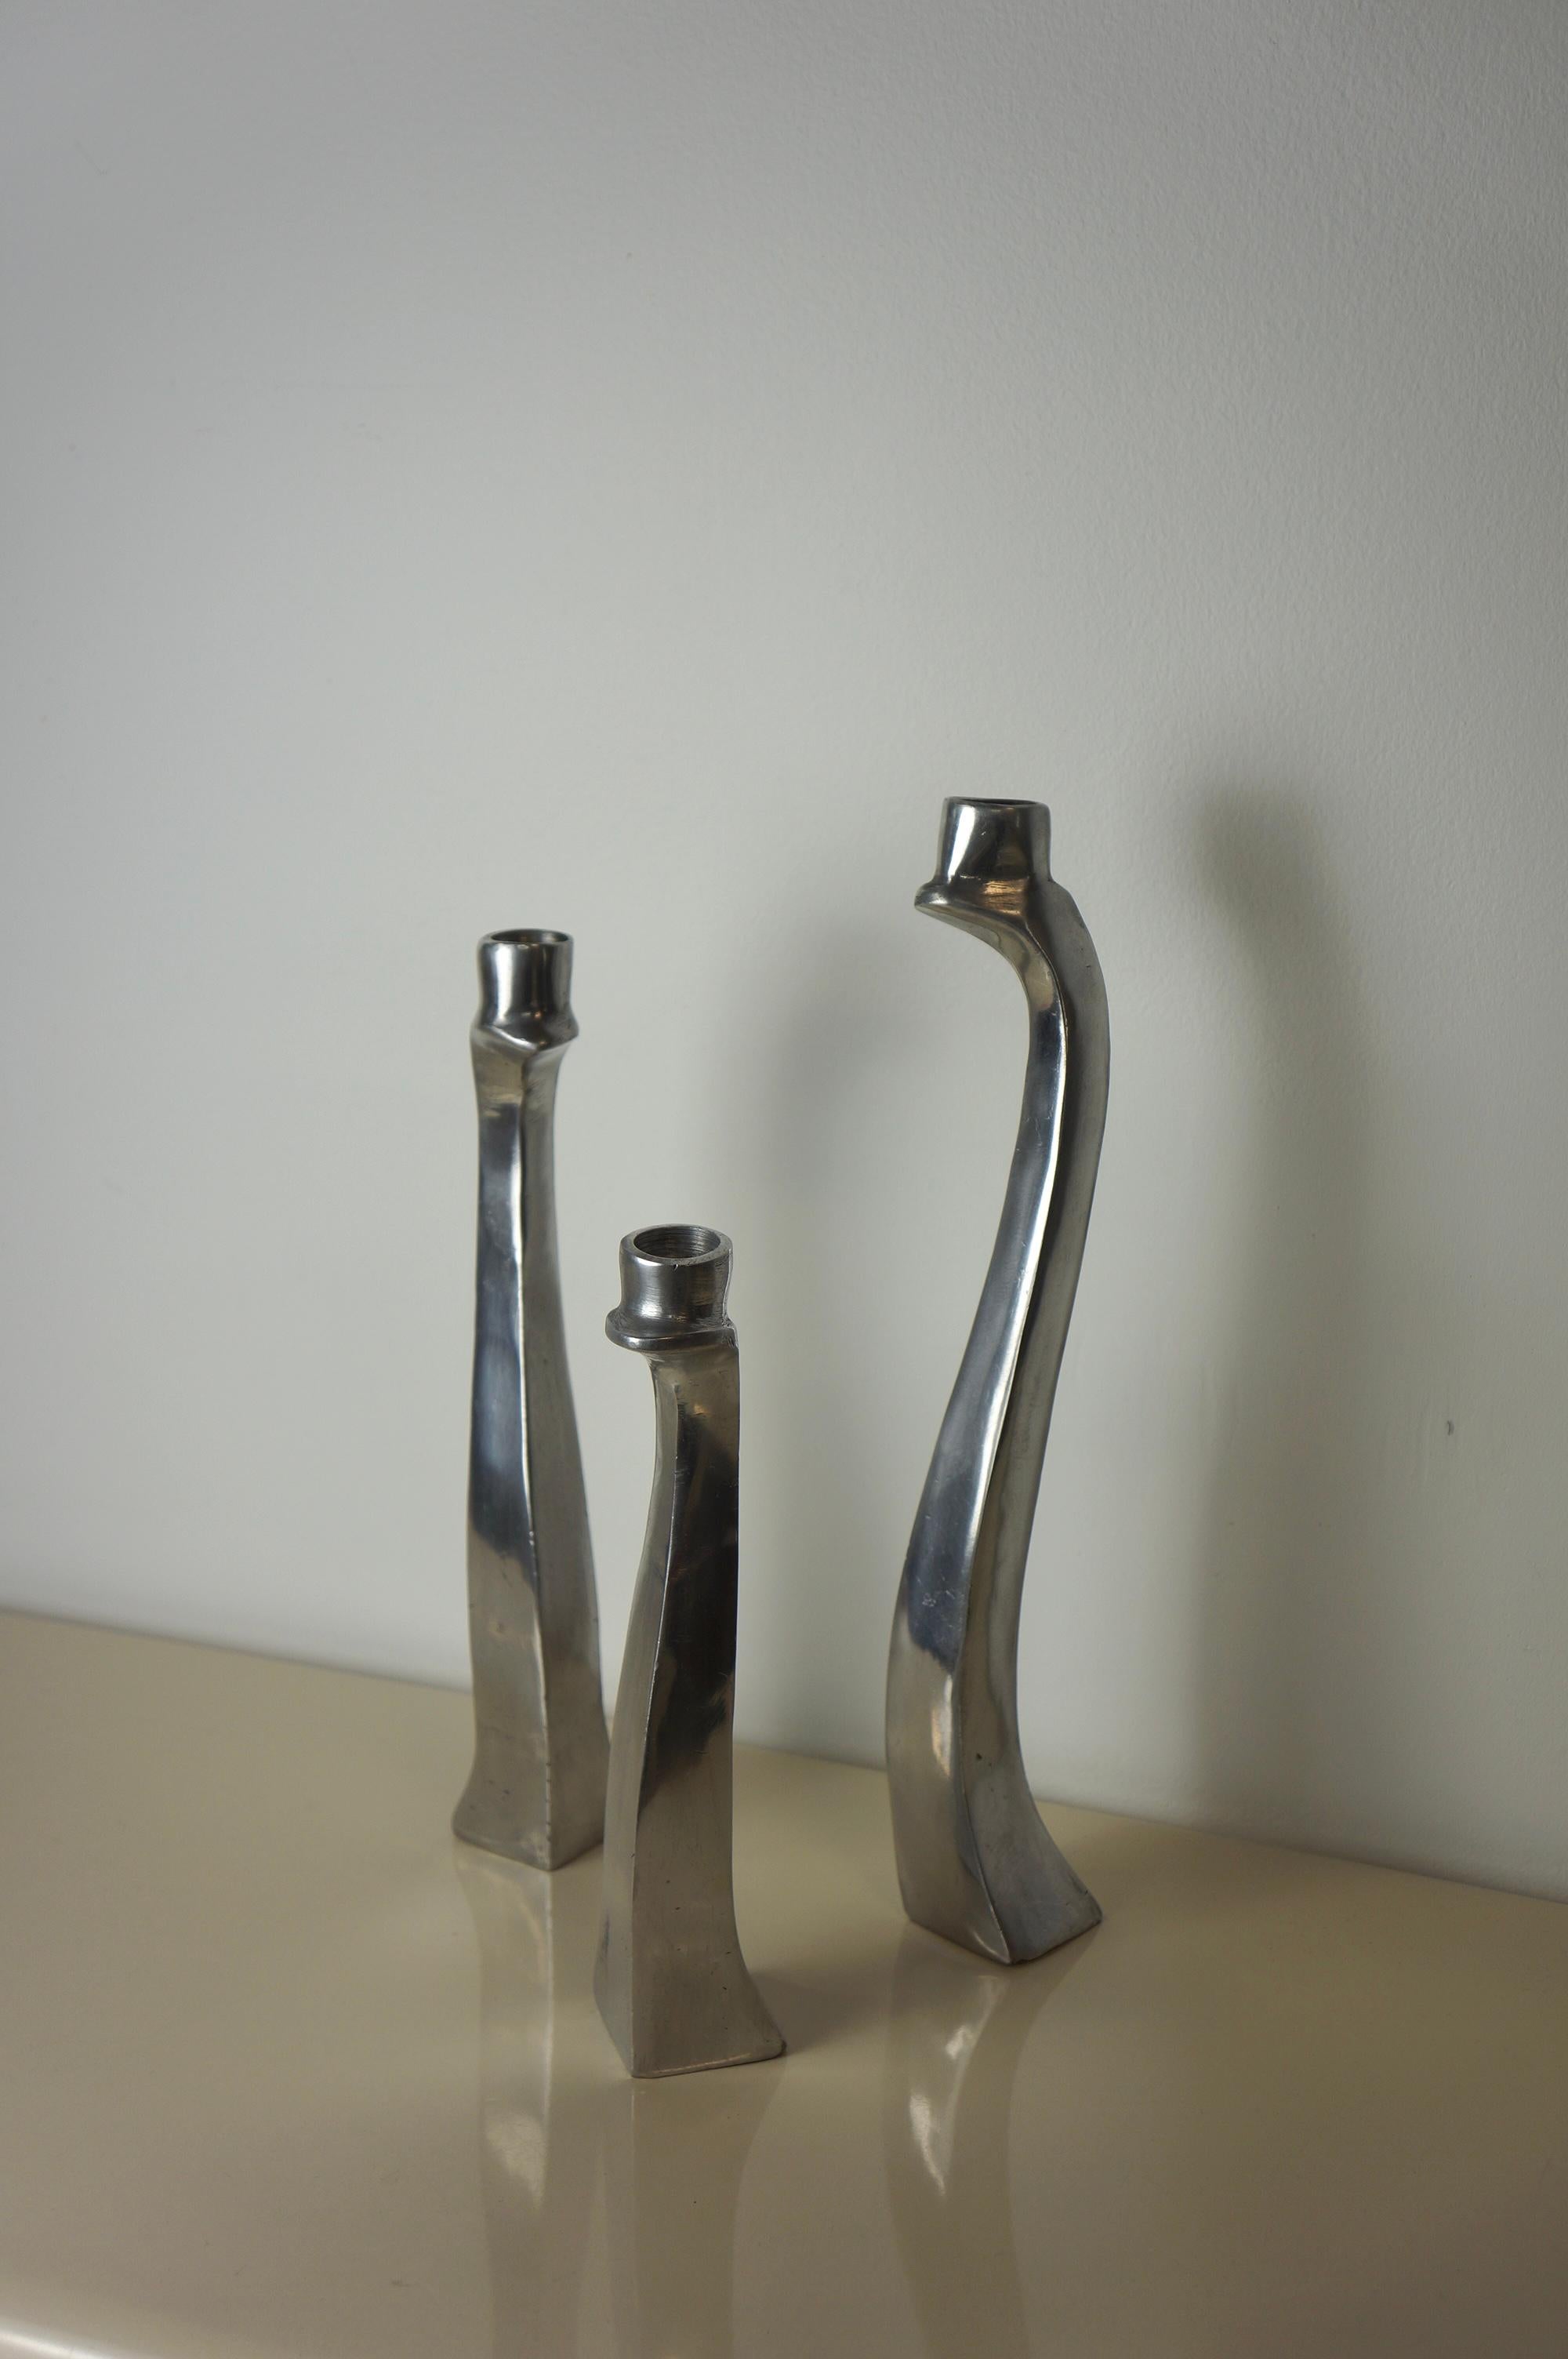 Ein Satz von drei biomorphen Kerzenhaltern aus poliertem Aluminium. Sie stammen aus den 1980er Jahren. Diese Art von Kerzenhaltern wird der Firma Escapade Paris zugeschrieben. Diese Kerzenhalter sind frei geformt und haben einen skulpturalen Körper